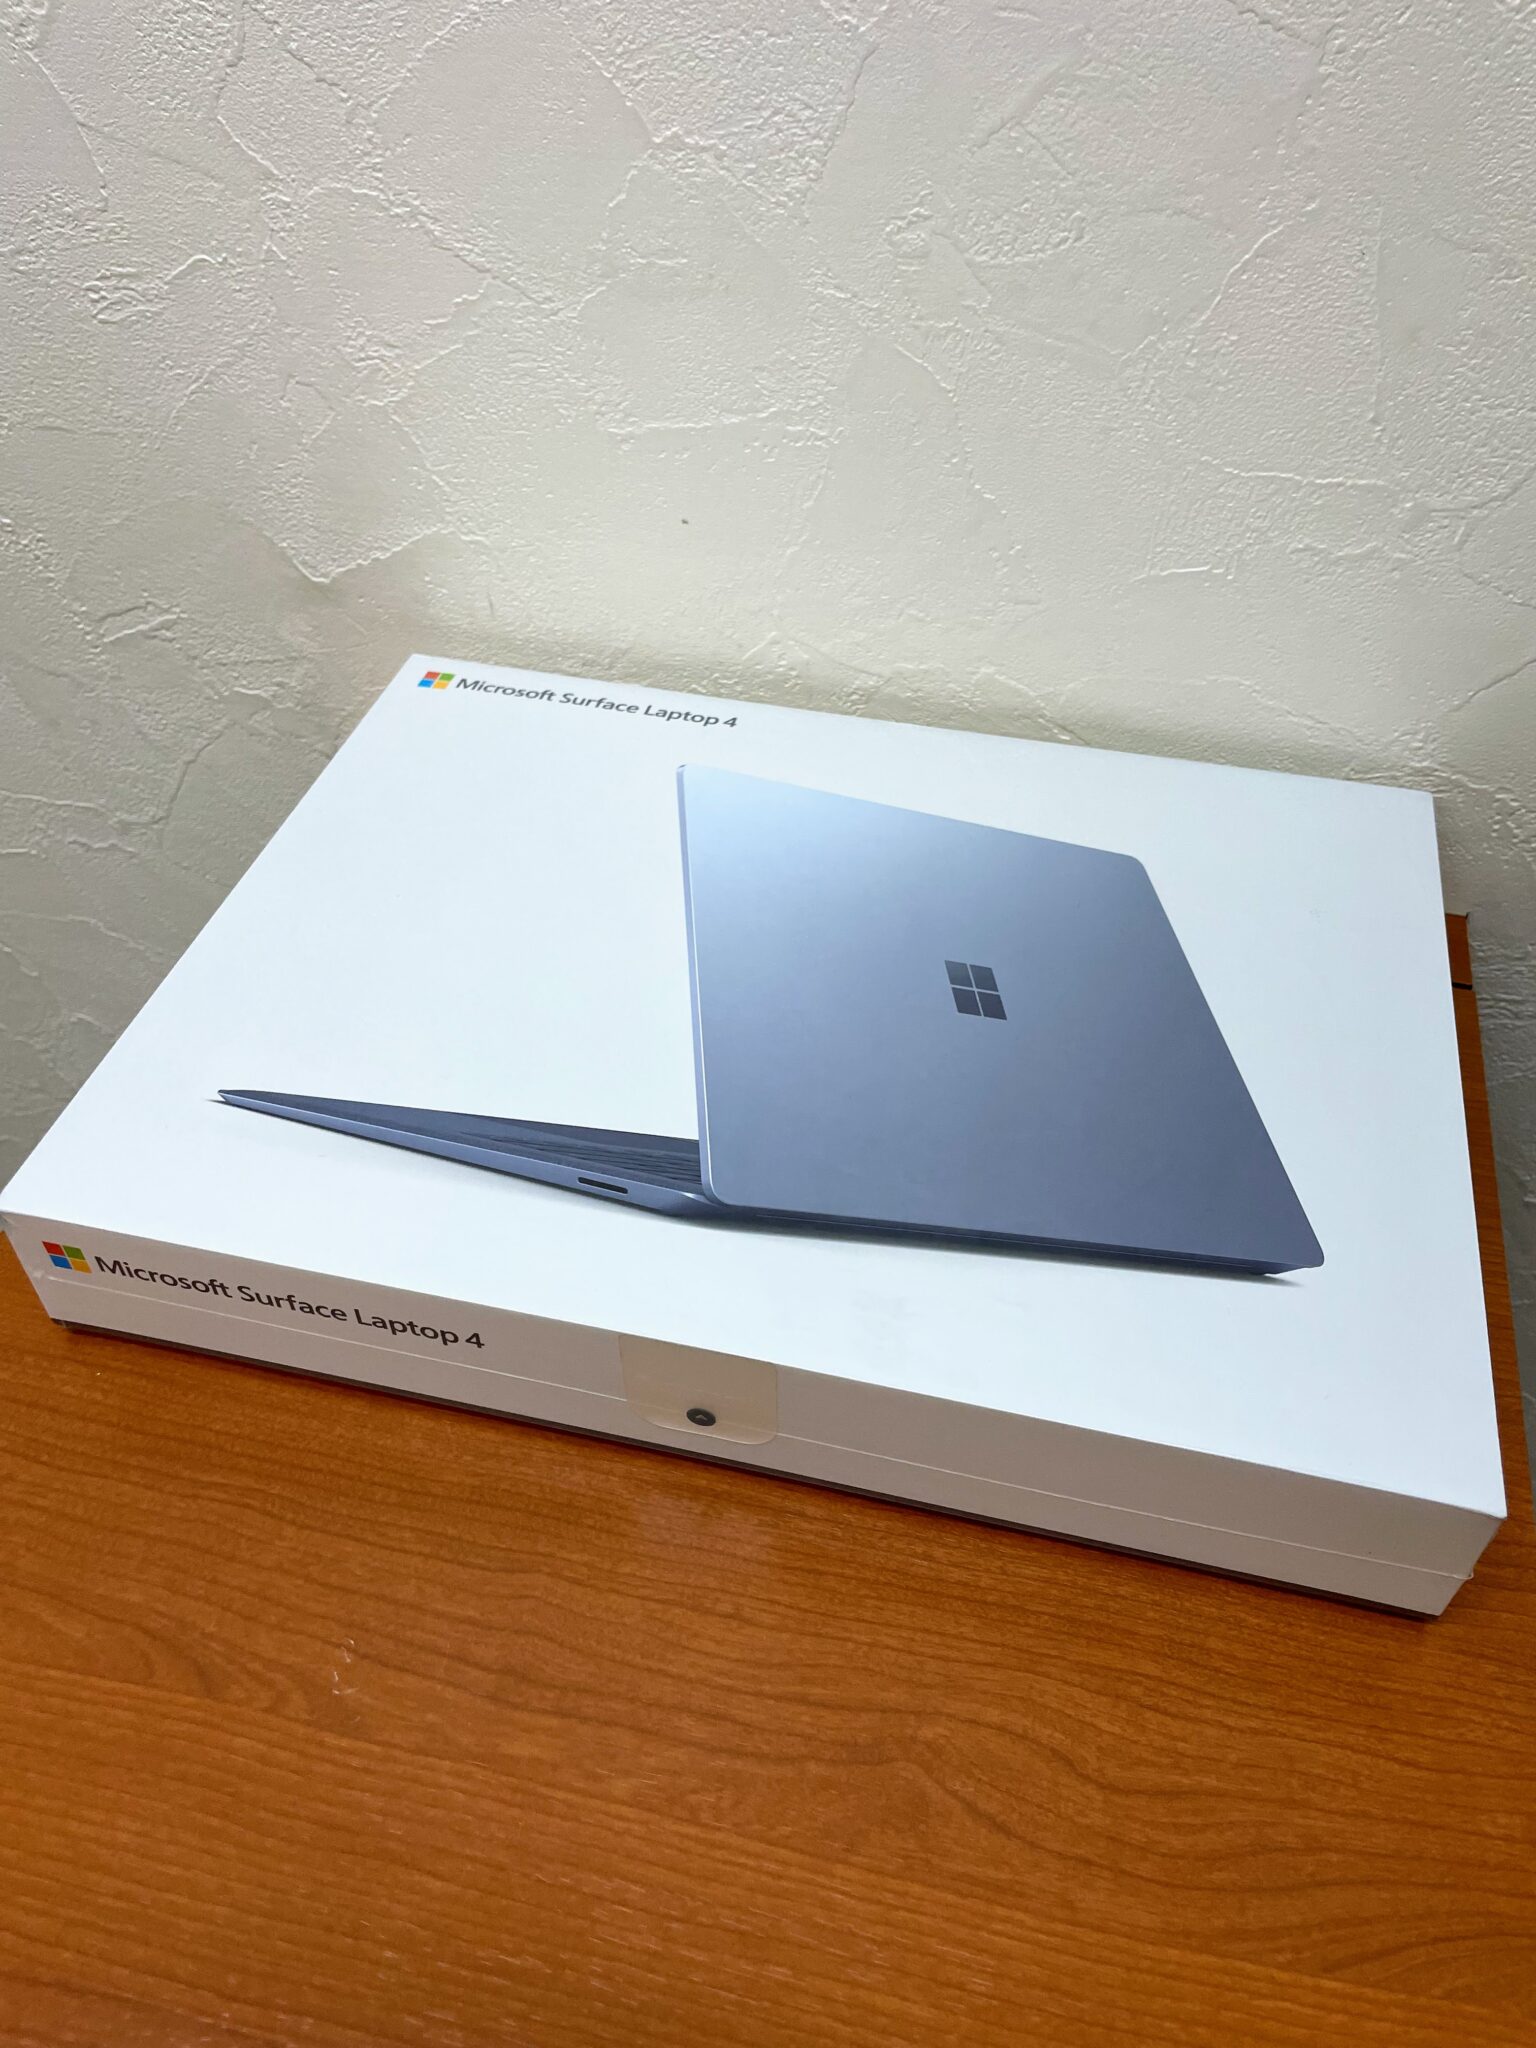 Microsoft Surface Laptop4 マイクロソフト サーフェイス買取いたしました - 冨田質店｜舞鶴 福知山 金・ブランド品